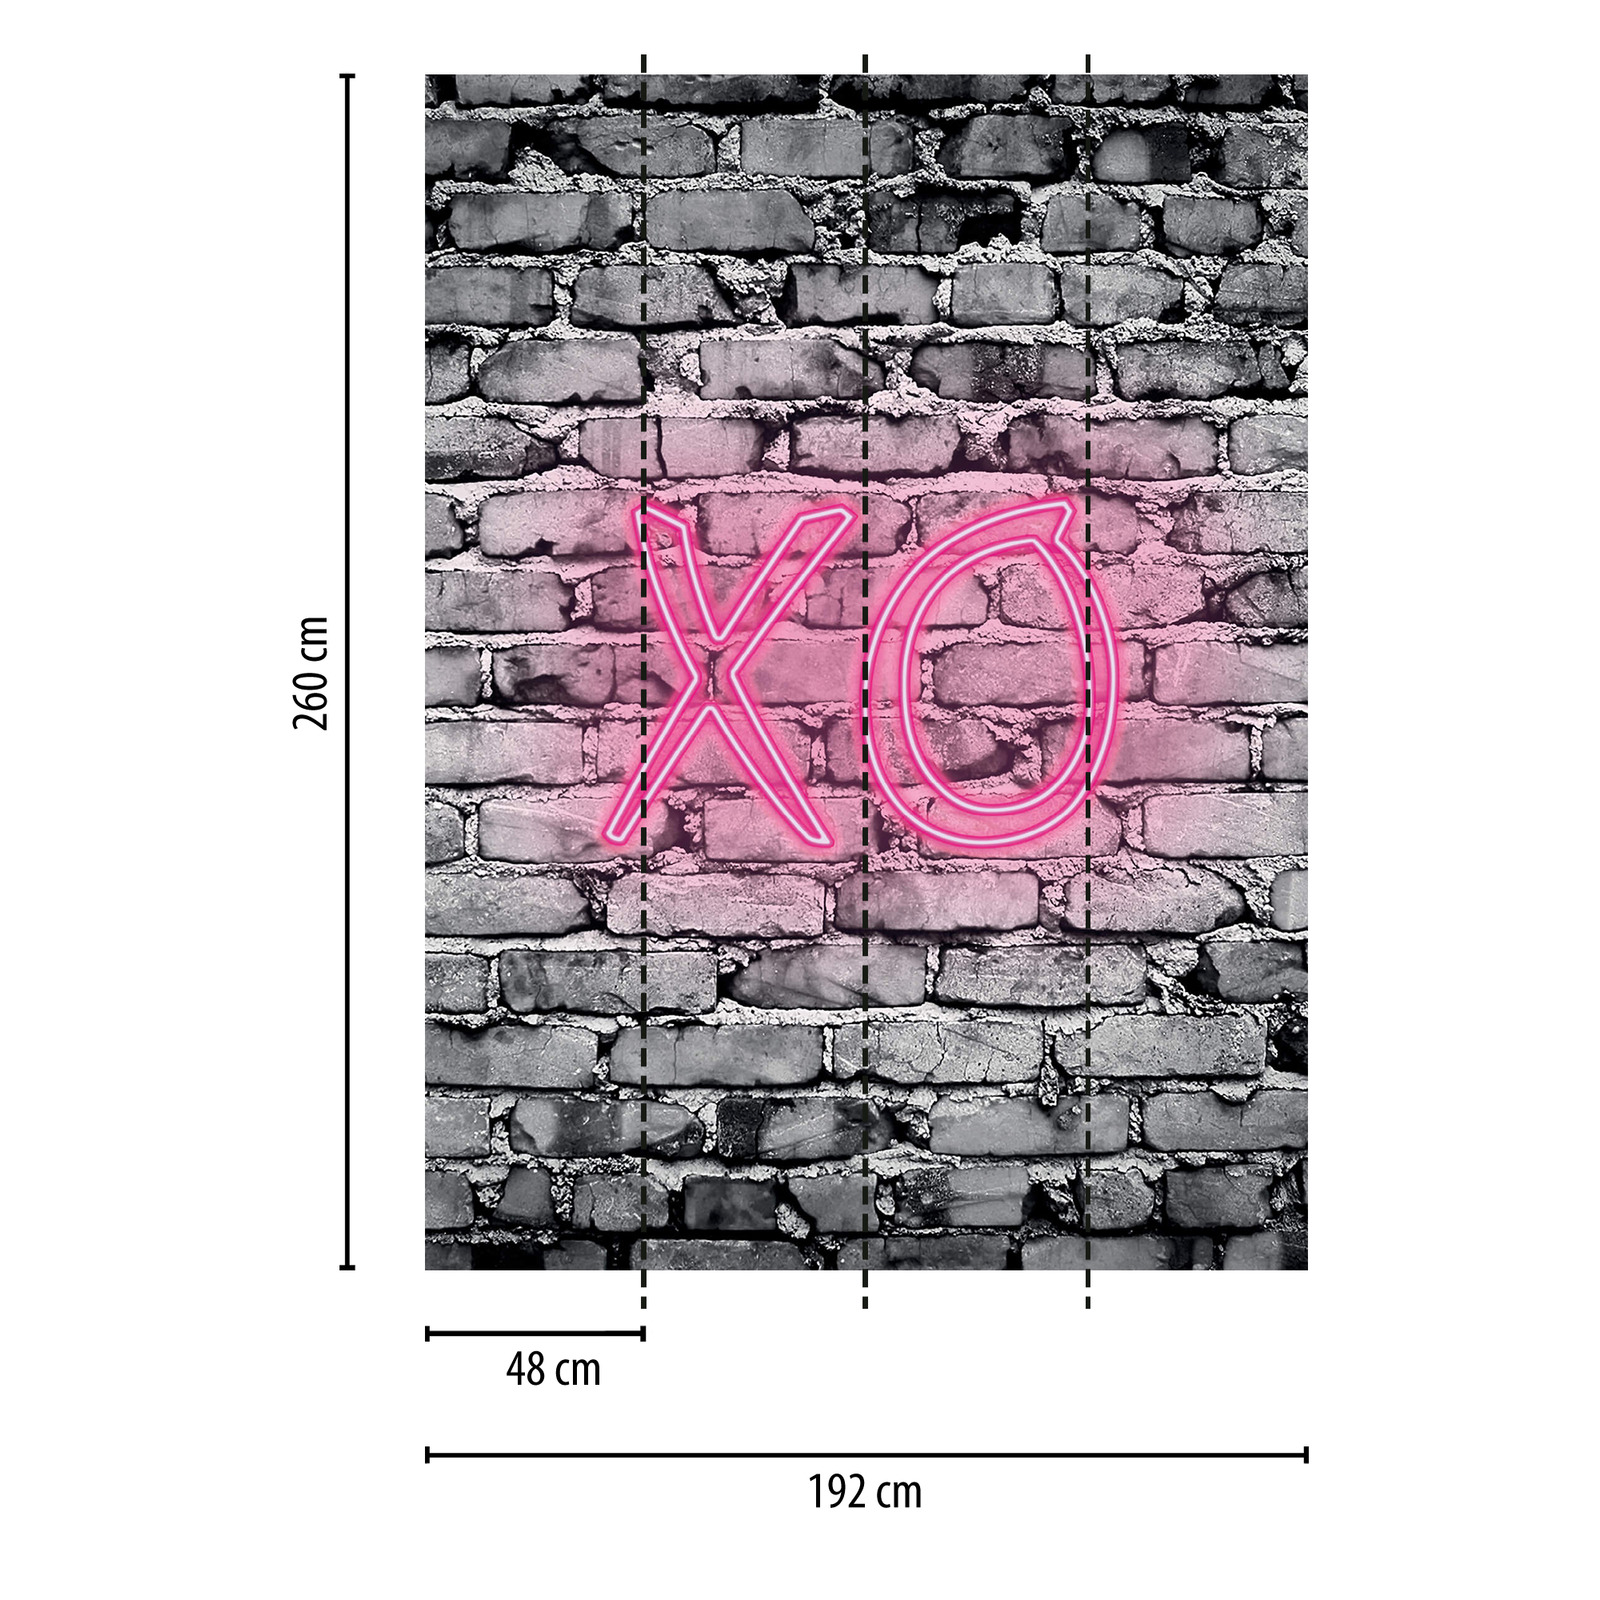             smal fotobehang verlichte letters XO op stenen muur
        